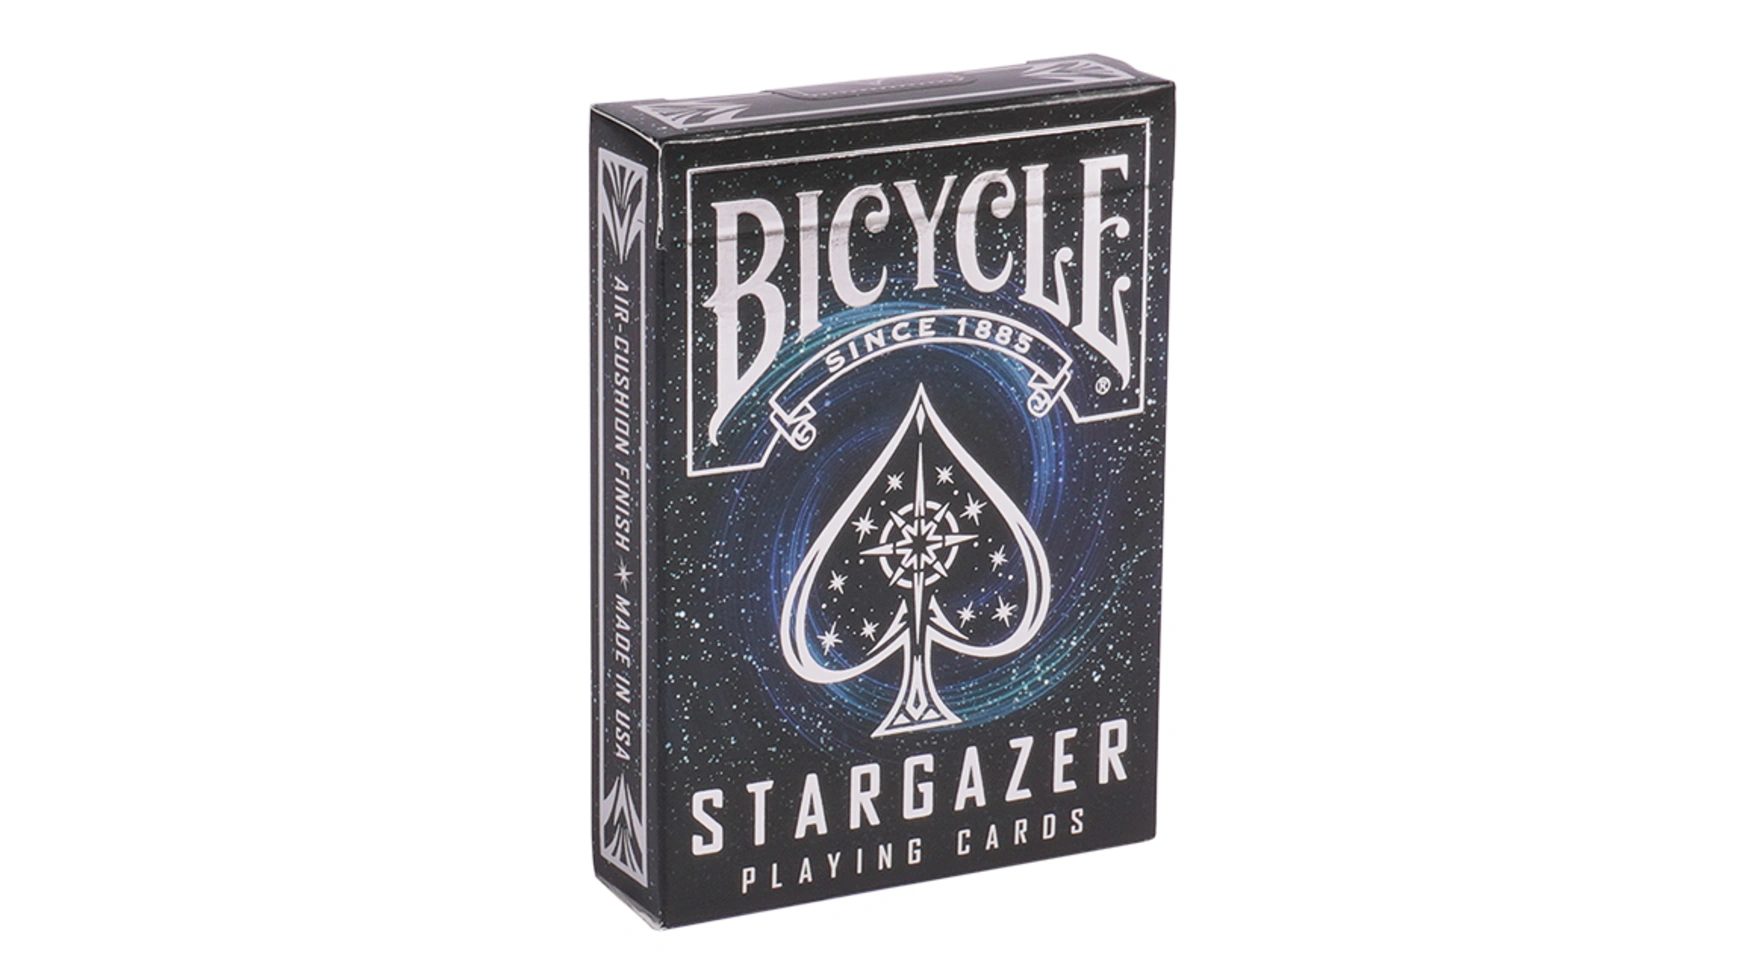 Bicycle колода карт для покера, карточная игра Stargazer игральные карты bicycle stargazer observatory обсерватория астронома